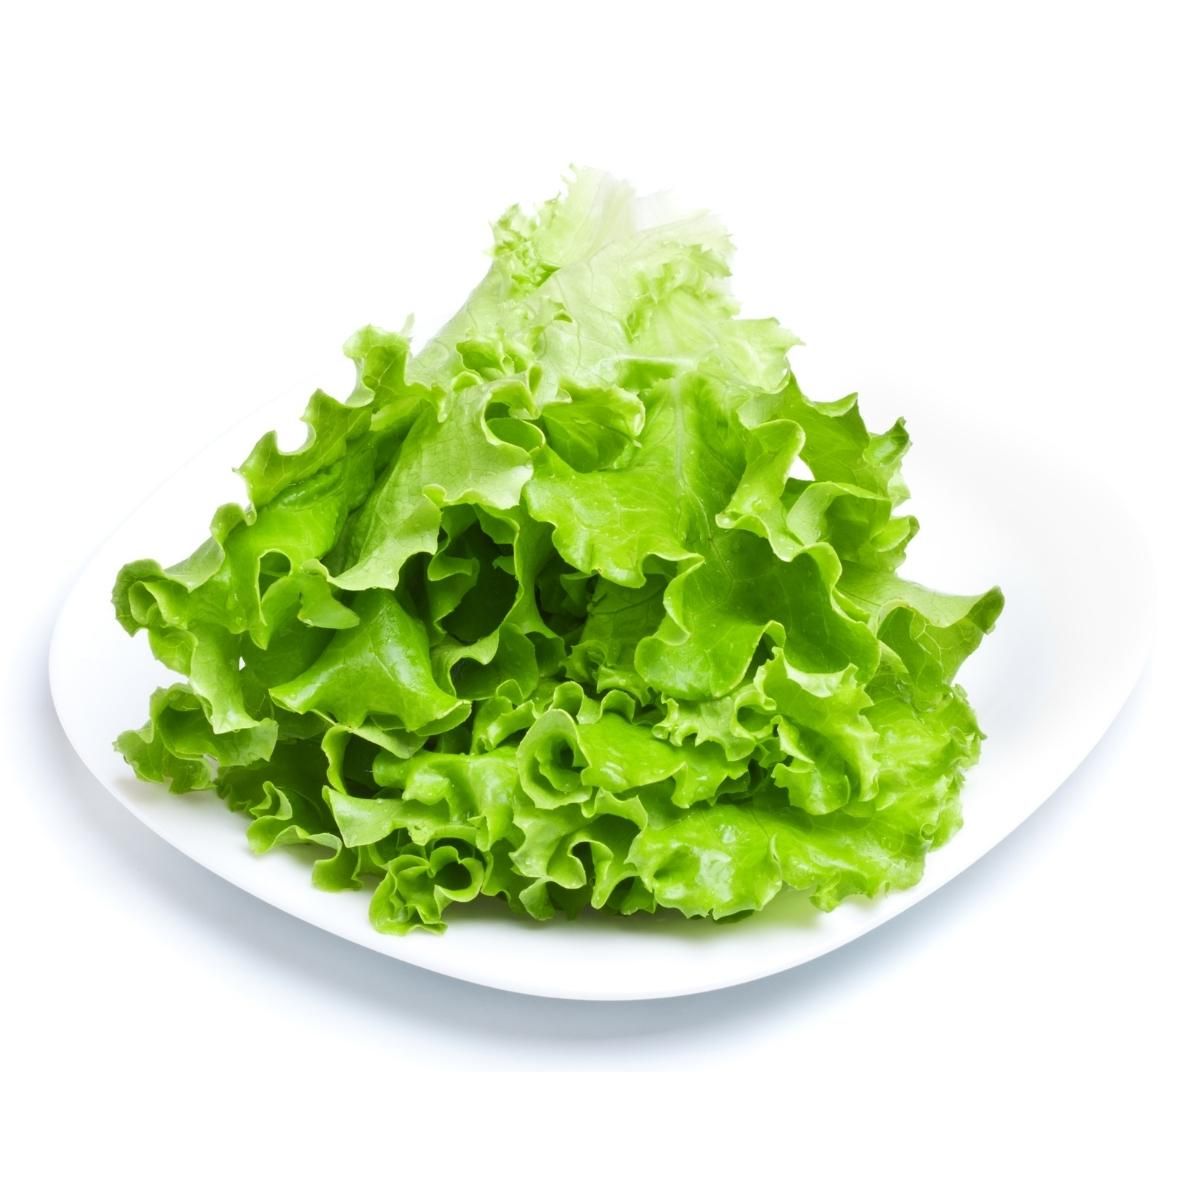 lettuce green.jpg